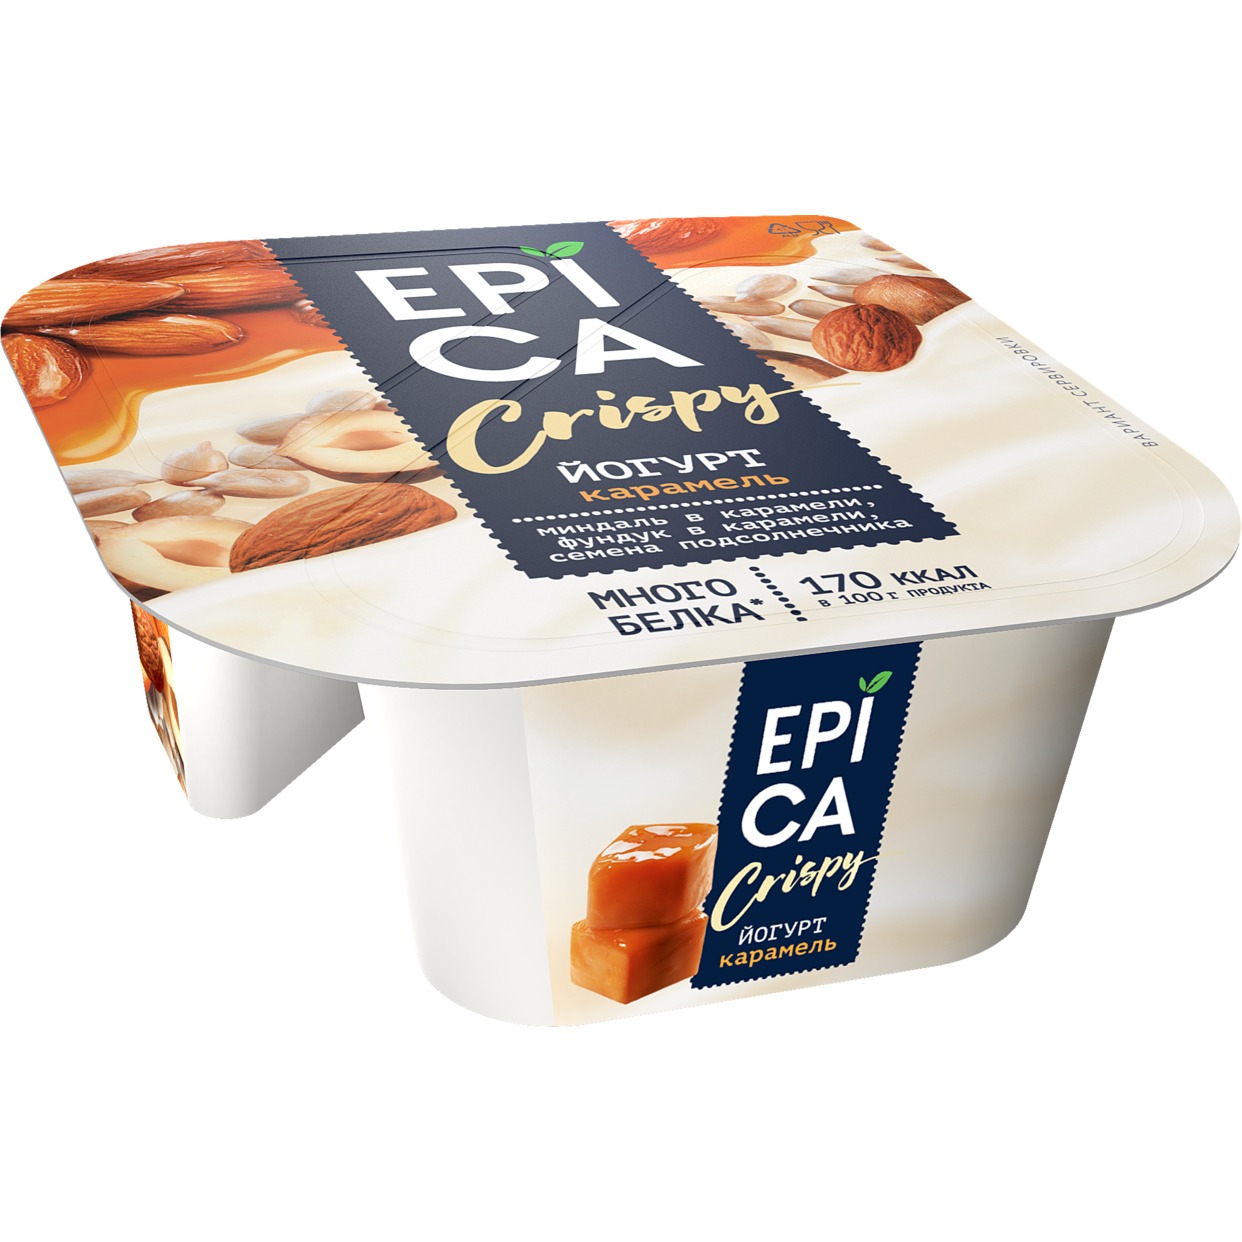 Йогурт Epica Crispy, карамель, 10,2%, 140 г по акции в Пятерочке